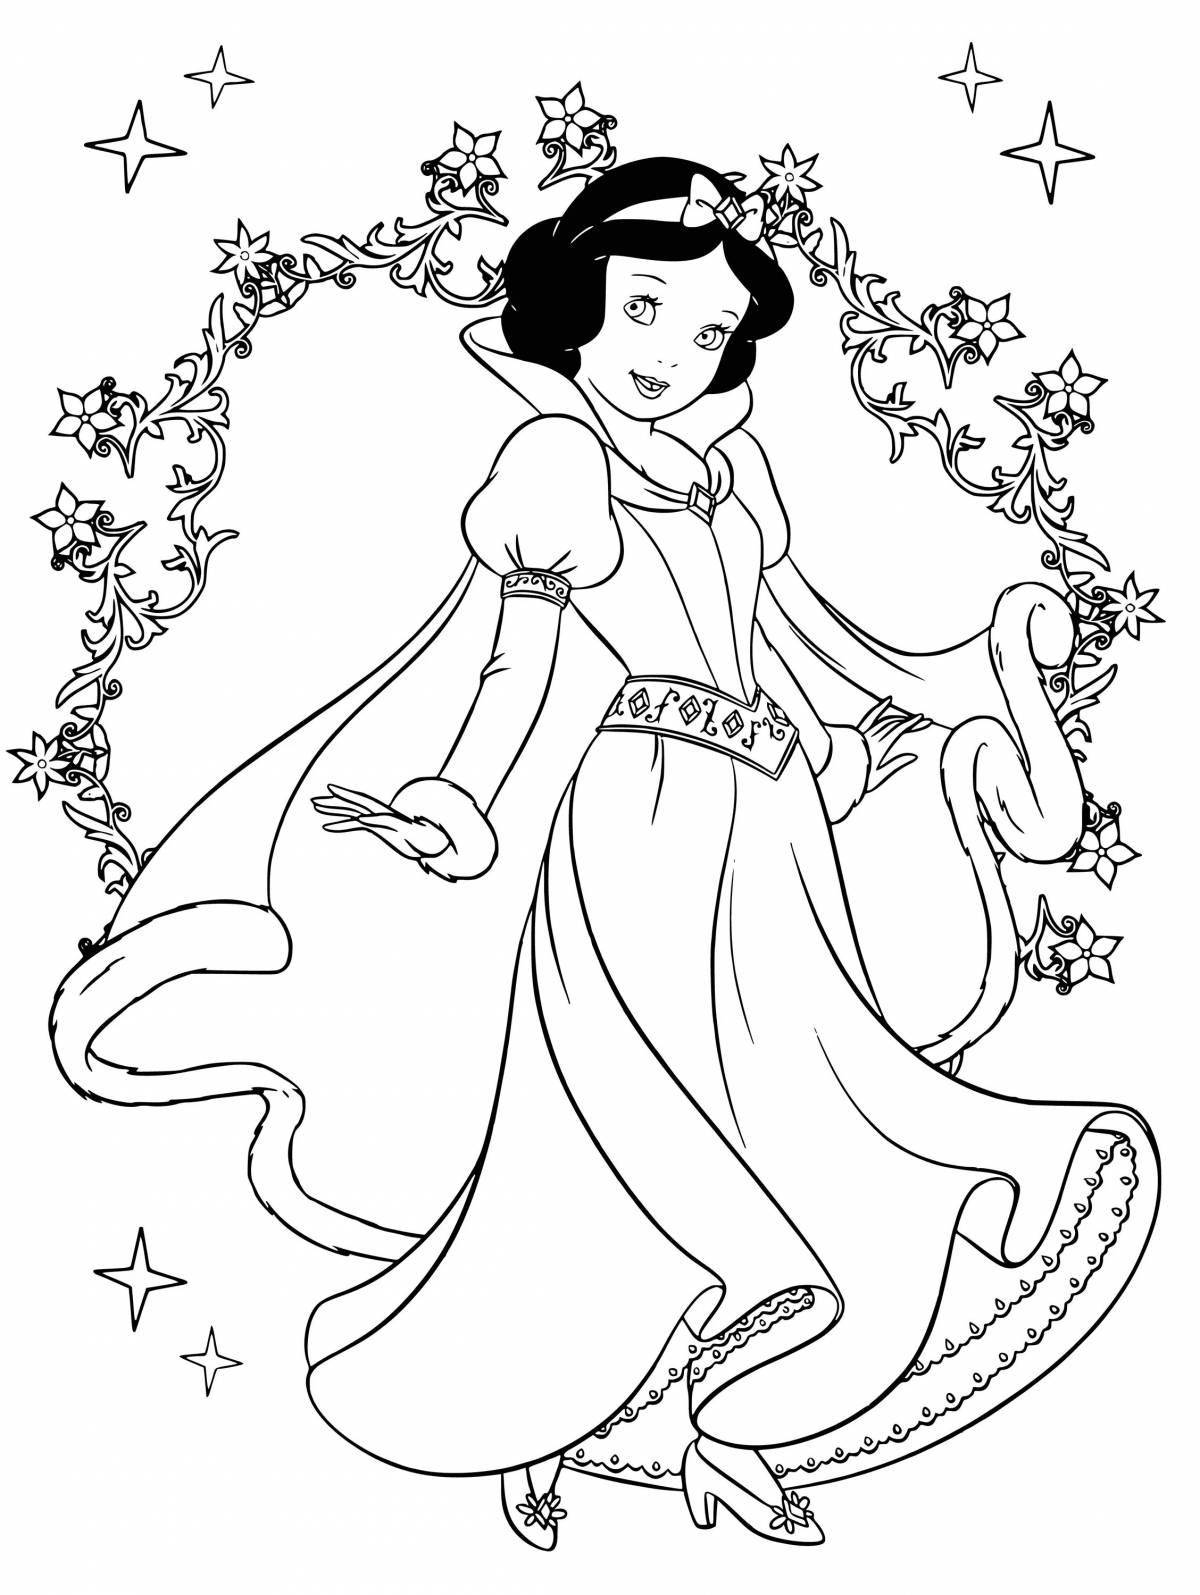 Coloring page joyful snow white princess